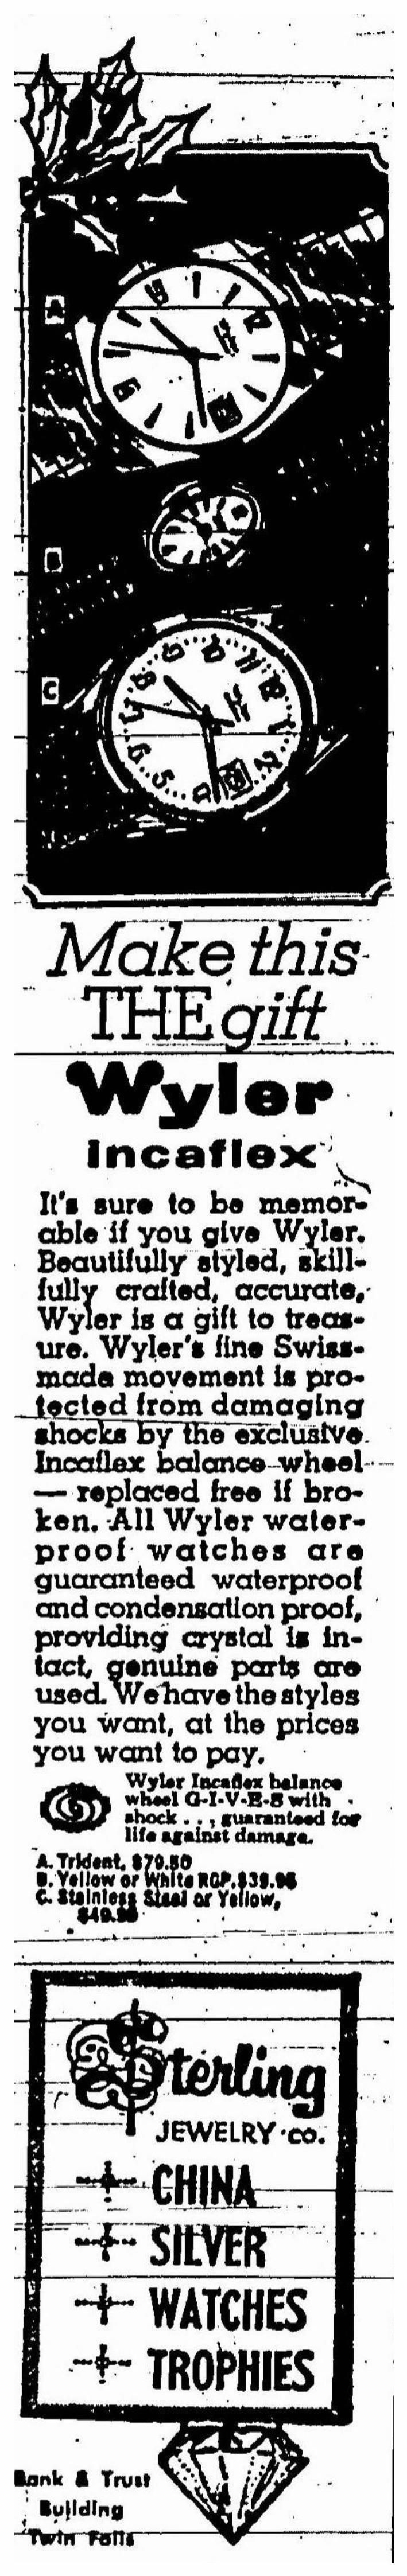 Wyler 1969 188.jpg